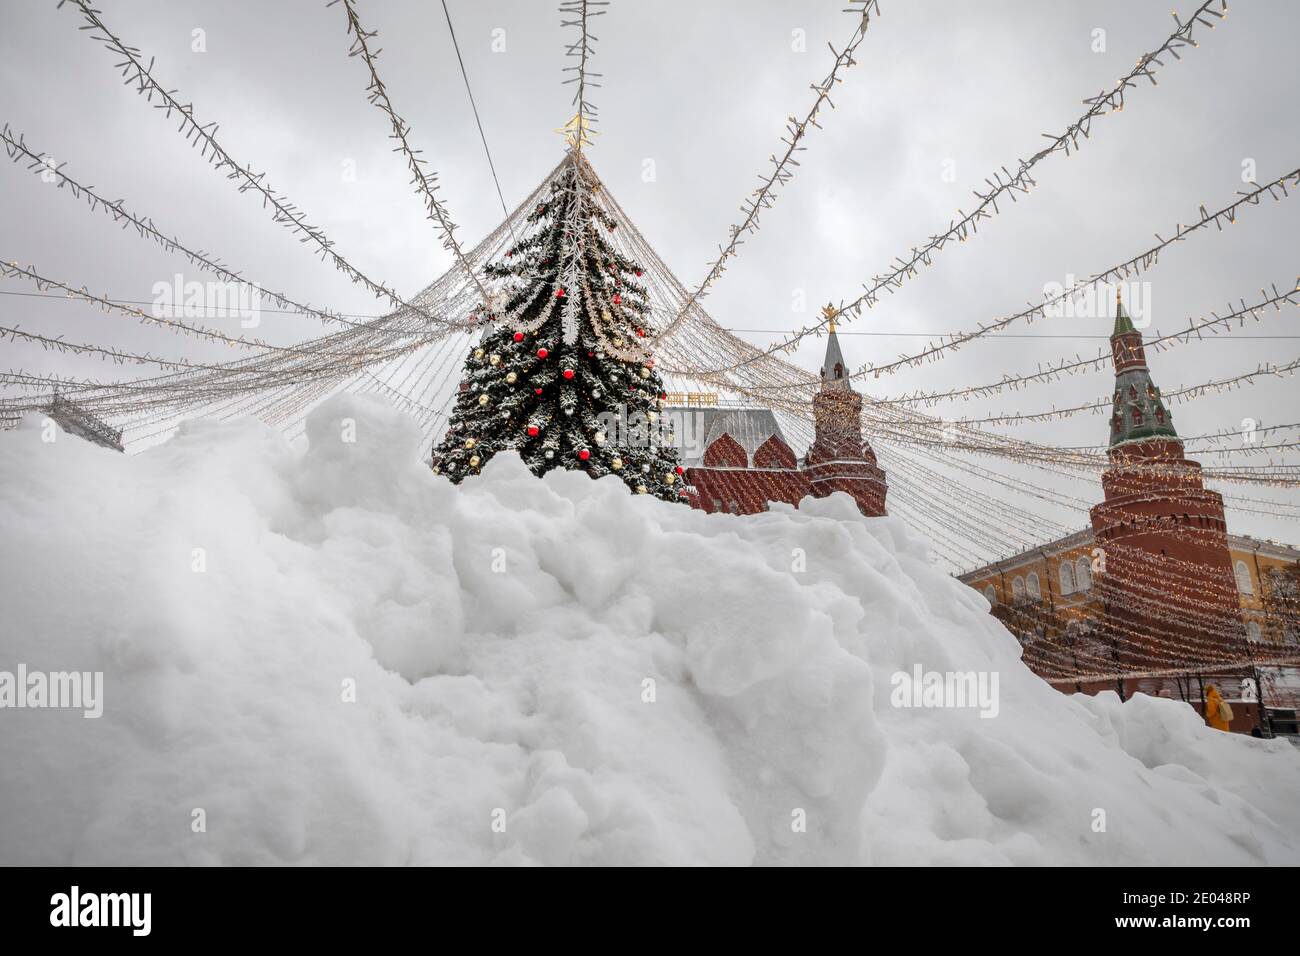 Moscou, Russie. 25 décembre, 2020 grandes déperlées de neige après la chute anormale de neige du cyclone Greta et un arbre de Noël décoré sur la place Manezhnaya dans le centre de Moscou à la Saint-Sylvestre, en Russie Banque D'Images